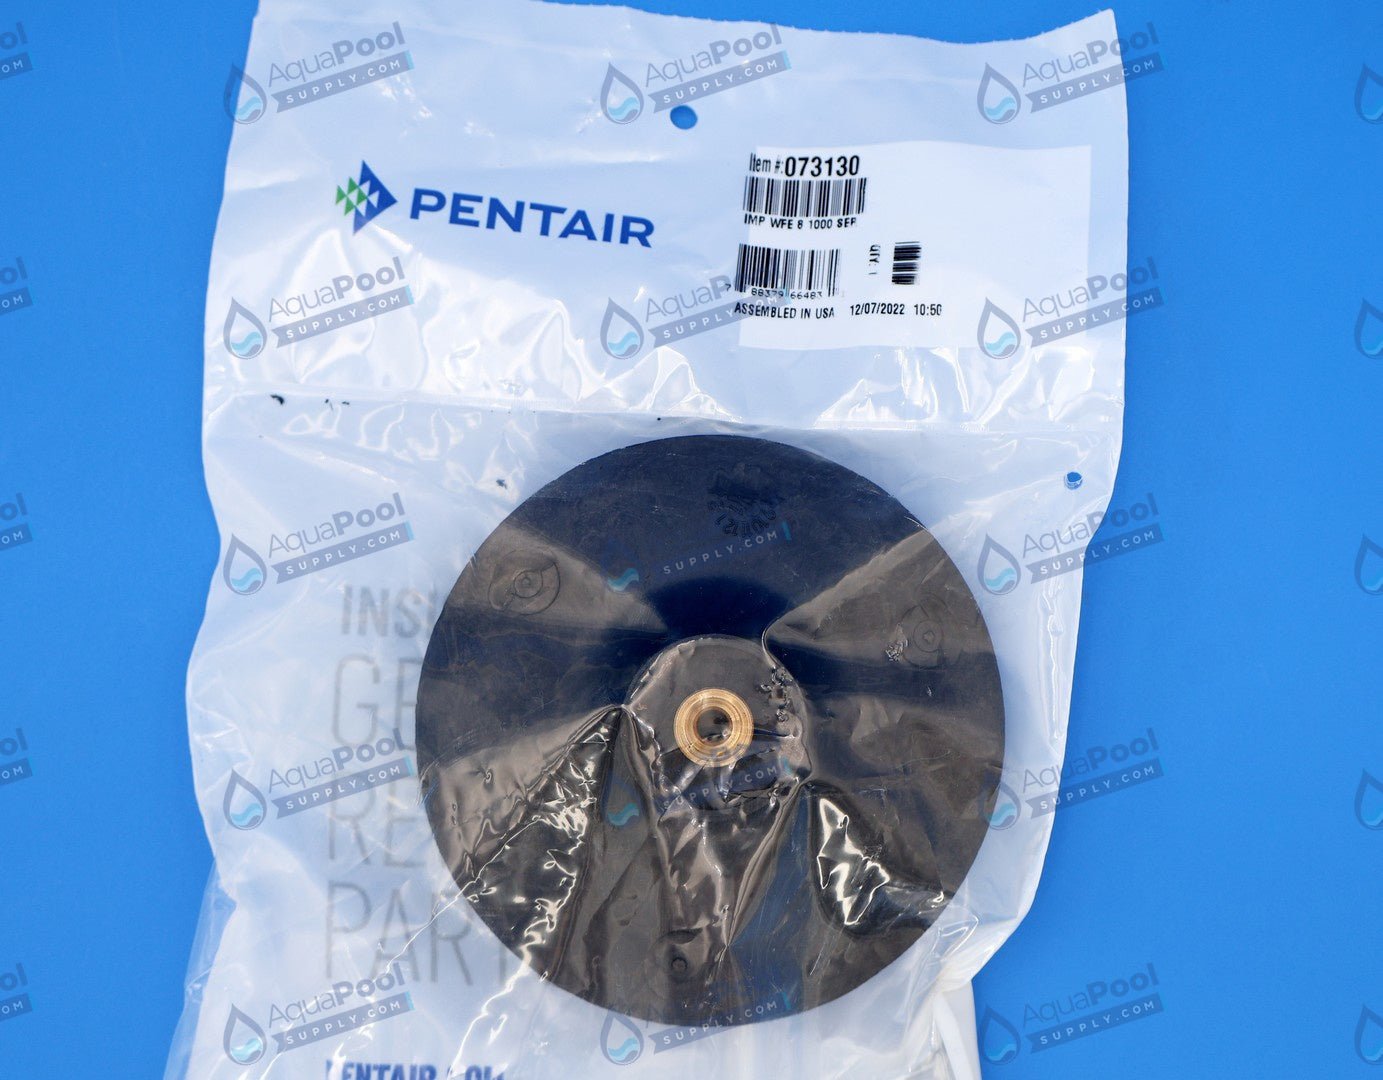 Pentair WhisperFlo® Impeller 2HP 073130 - Pool Pump Parts